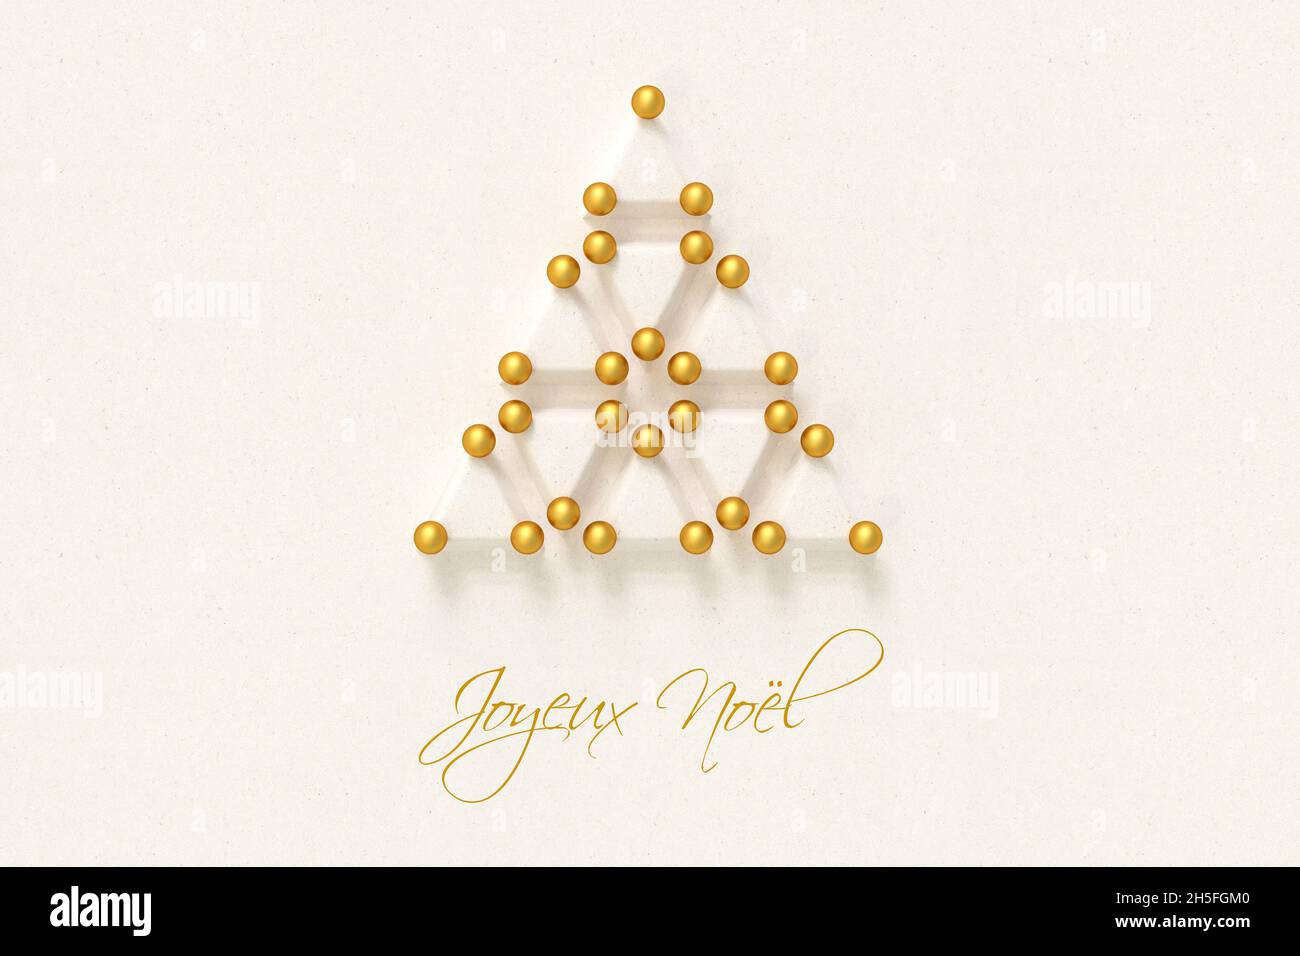 Albero di Natale fatto da triangoli di carta e baubles dorati. Messaggio francese "Joyeux Noël" (buon Natale) qui sotto. Foto Stock